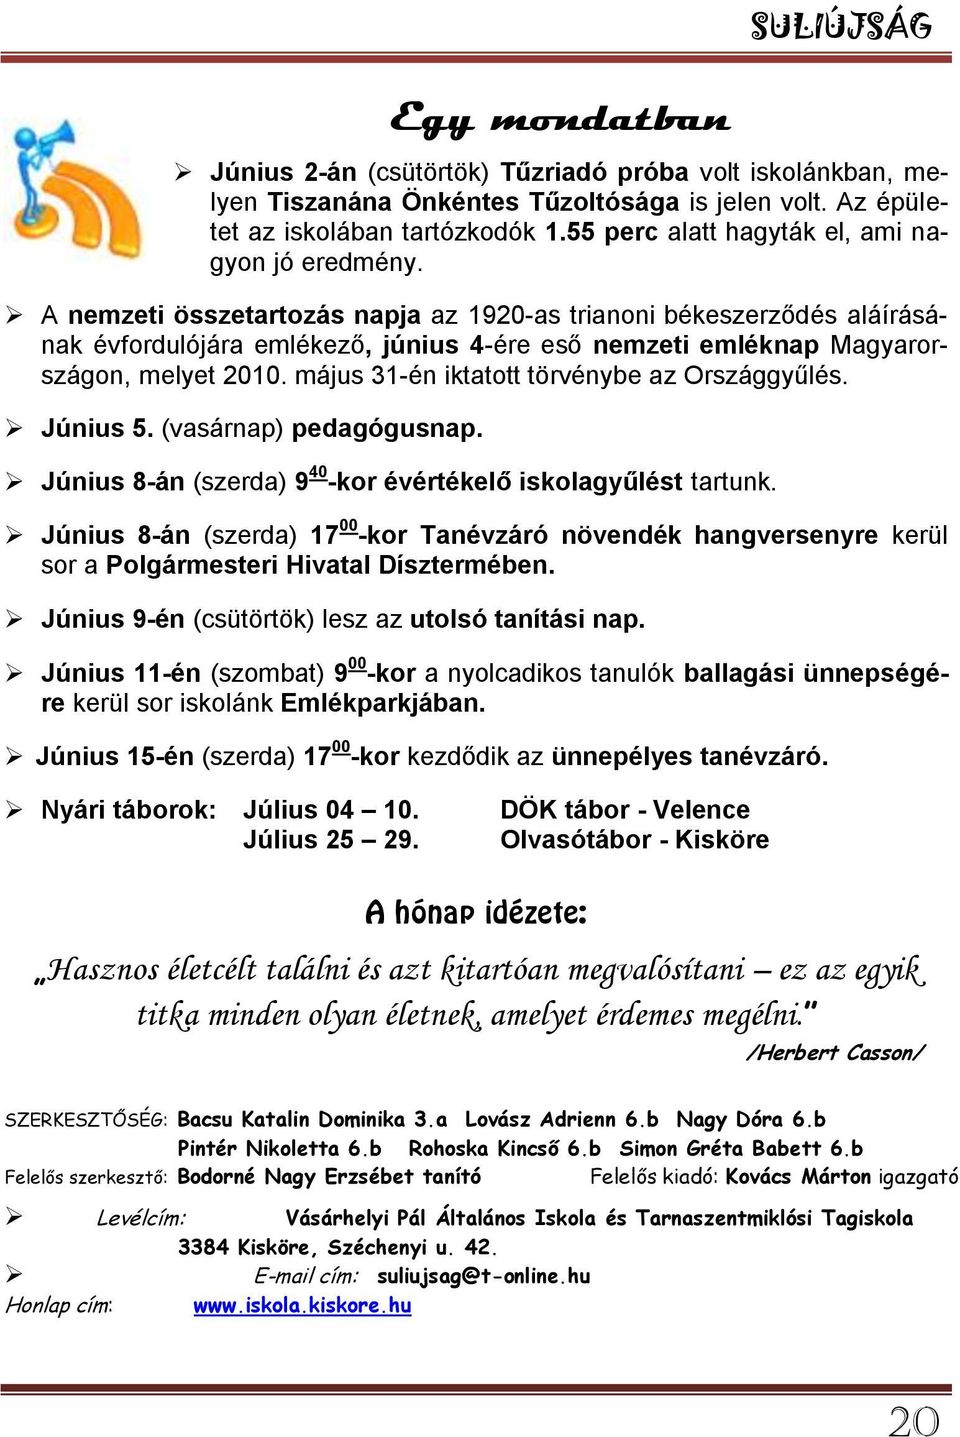 A nemzeti összetartozás napja az 1920-as trianoni békeszerződés aláírásának évfordulójára emlékező, június 4-ére eső nemzeti emléknap Magyarországon, melyet 2010.